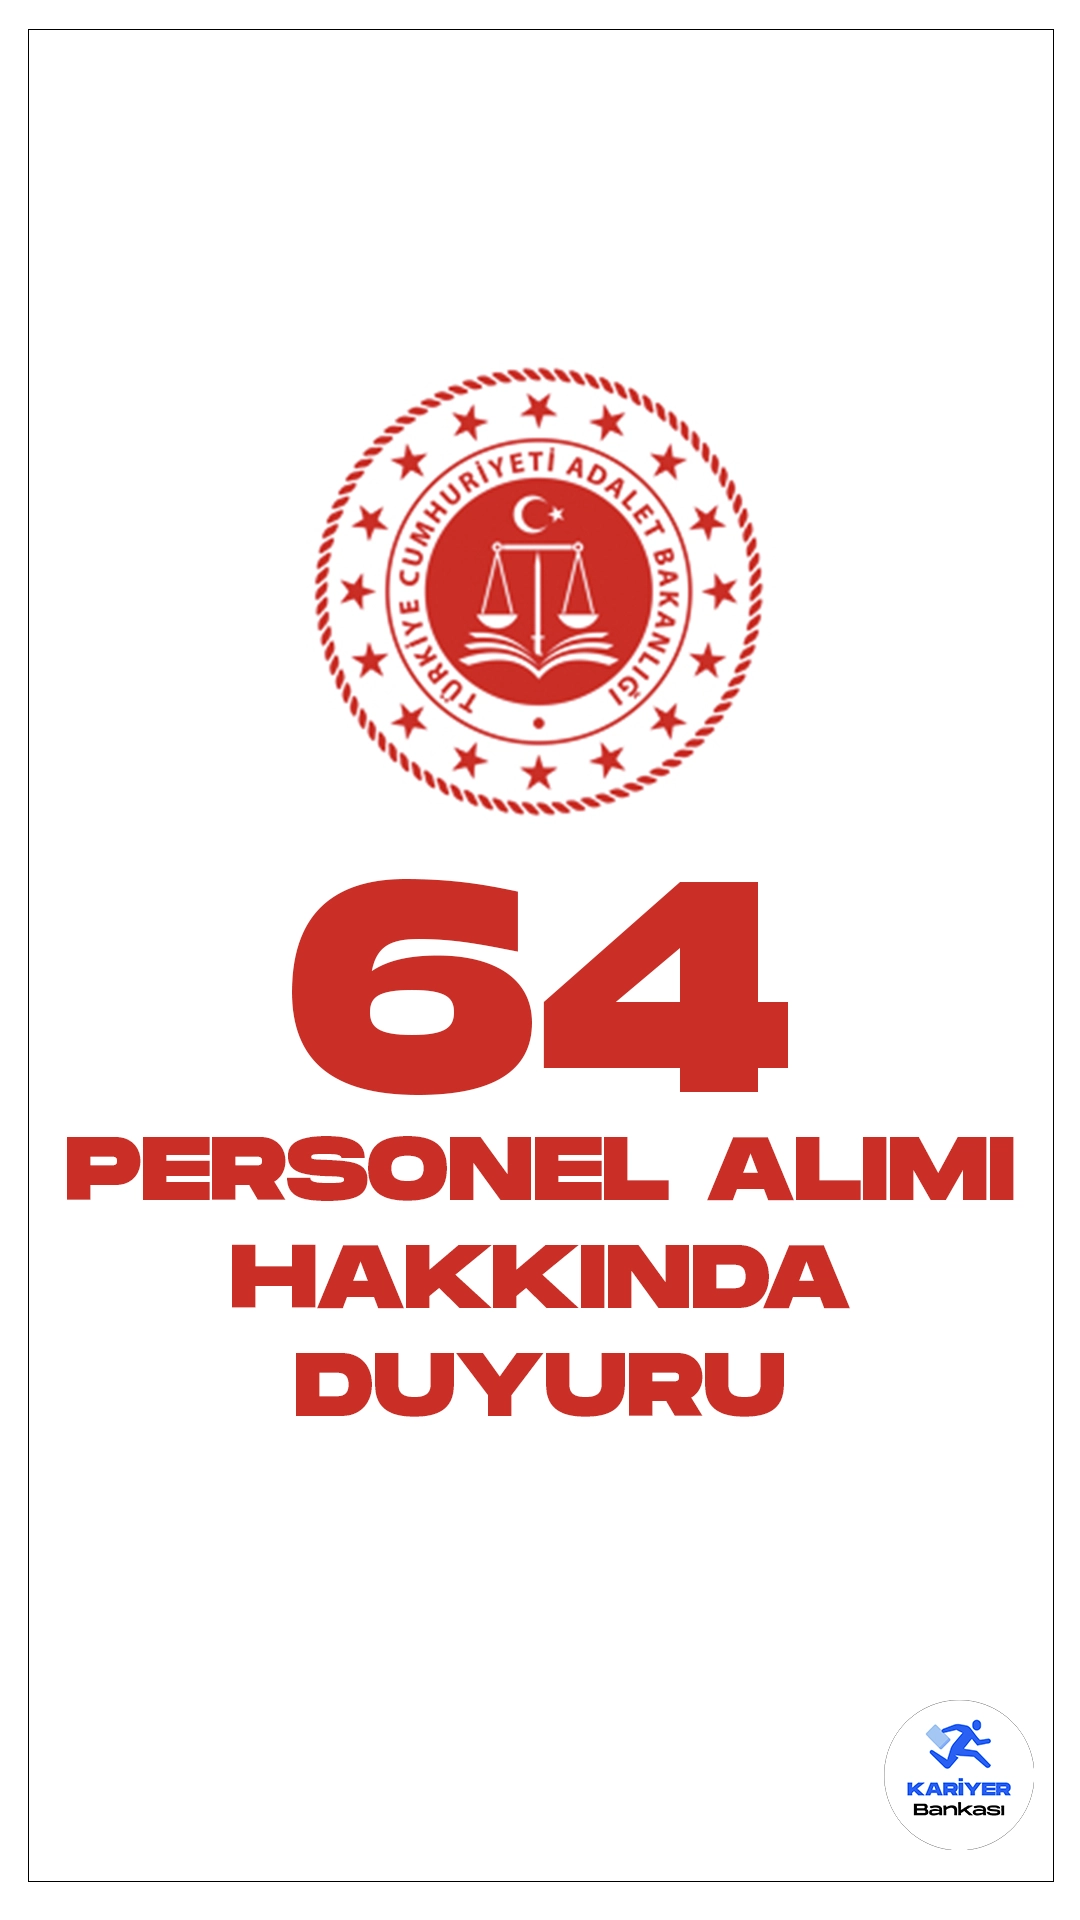 Adalet Bakanlığı 64 Personel Alımı Hakkında Duyuru Yayımlandı. Adalet Bakanlığı Personel Genel Müdürlüğü sayfasından yayımlanan duyuruda, mühendis, bilişim ve çözümleyici pozisyonları için personel alımı sözlü sınav sonuçlarının açıklandığı aktarıldı.